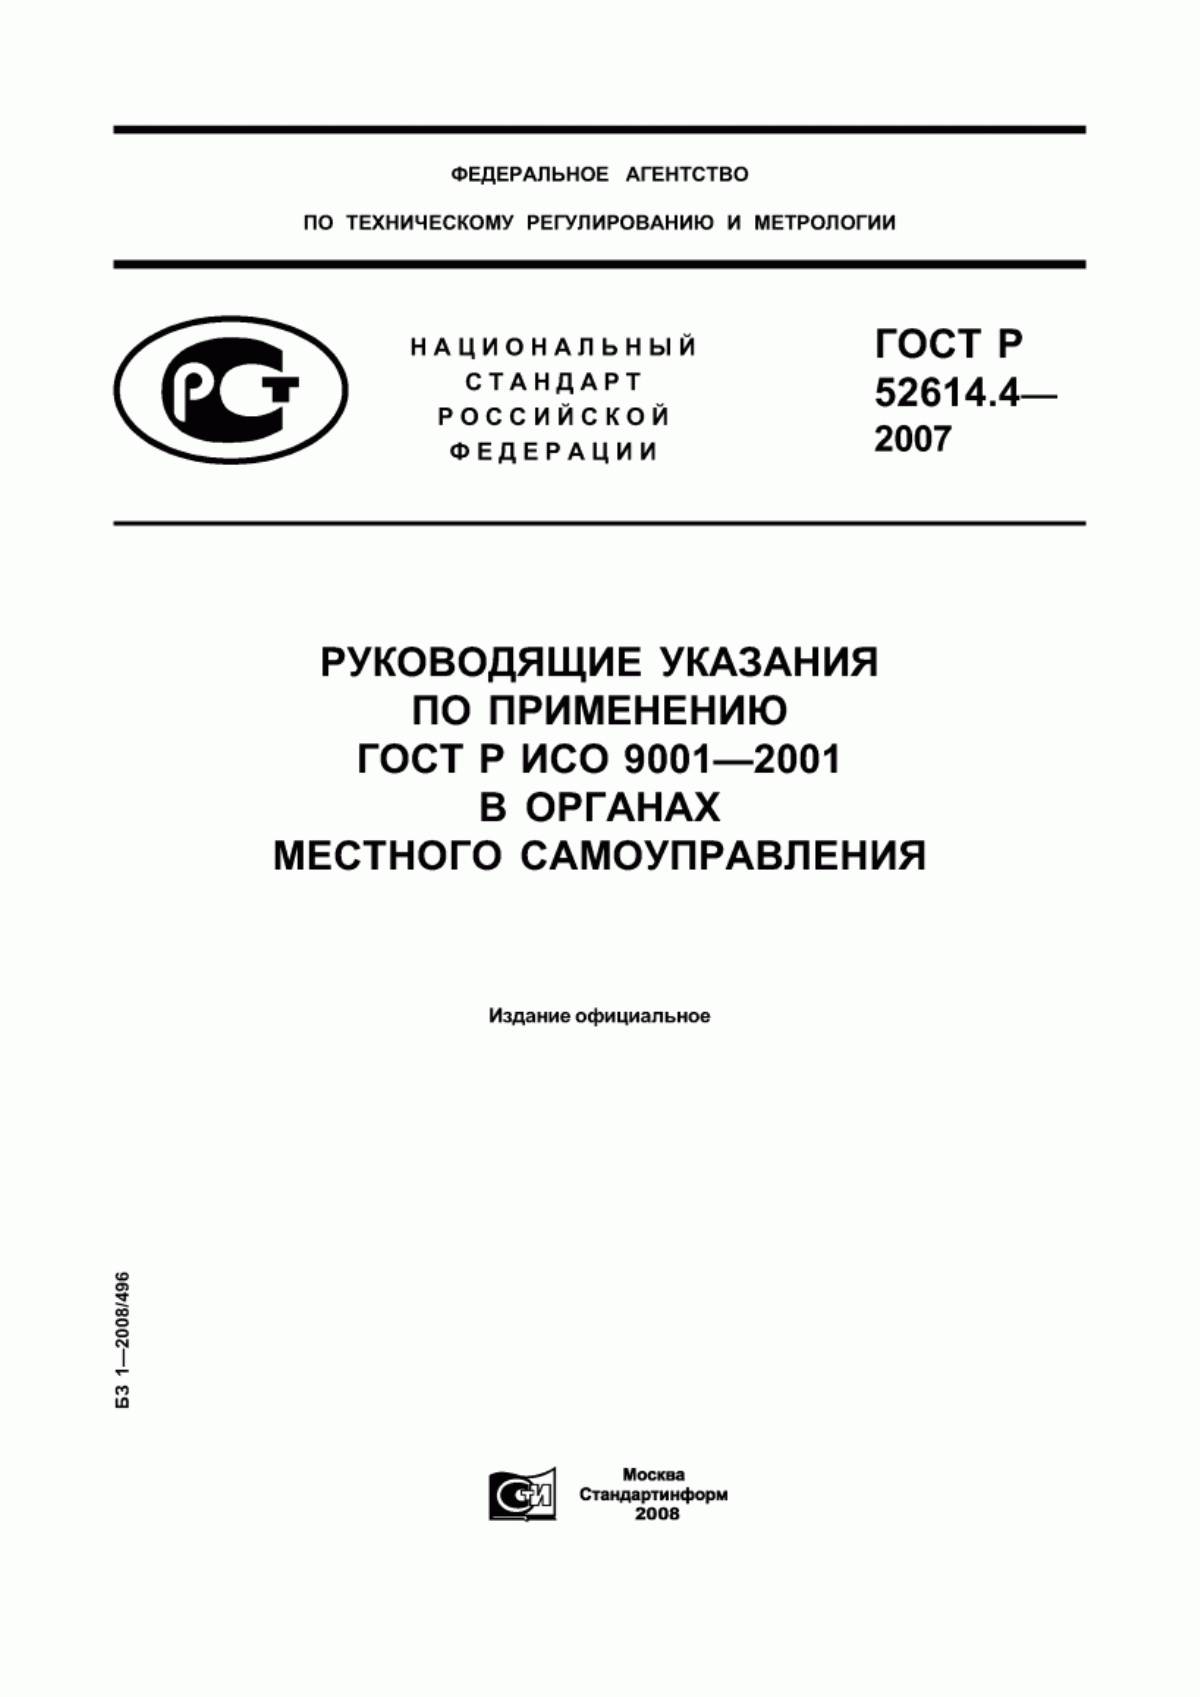 Лабораторная работа: Разработка стандартов типографии в соответствии с ГОСТ Р ИСО 9001-2008